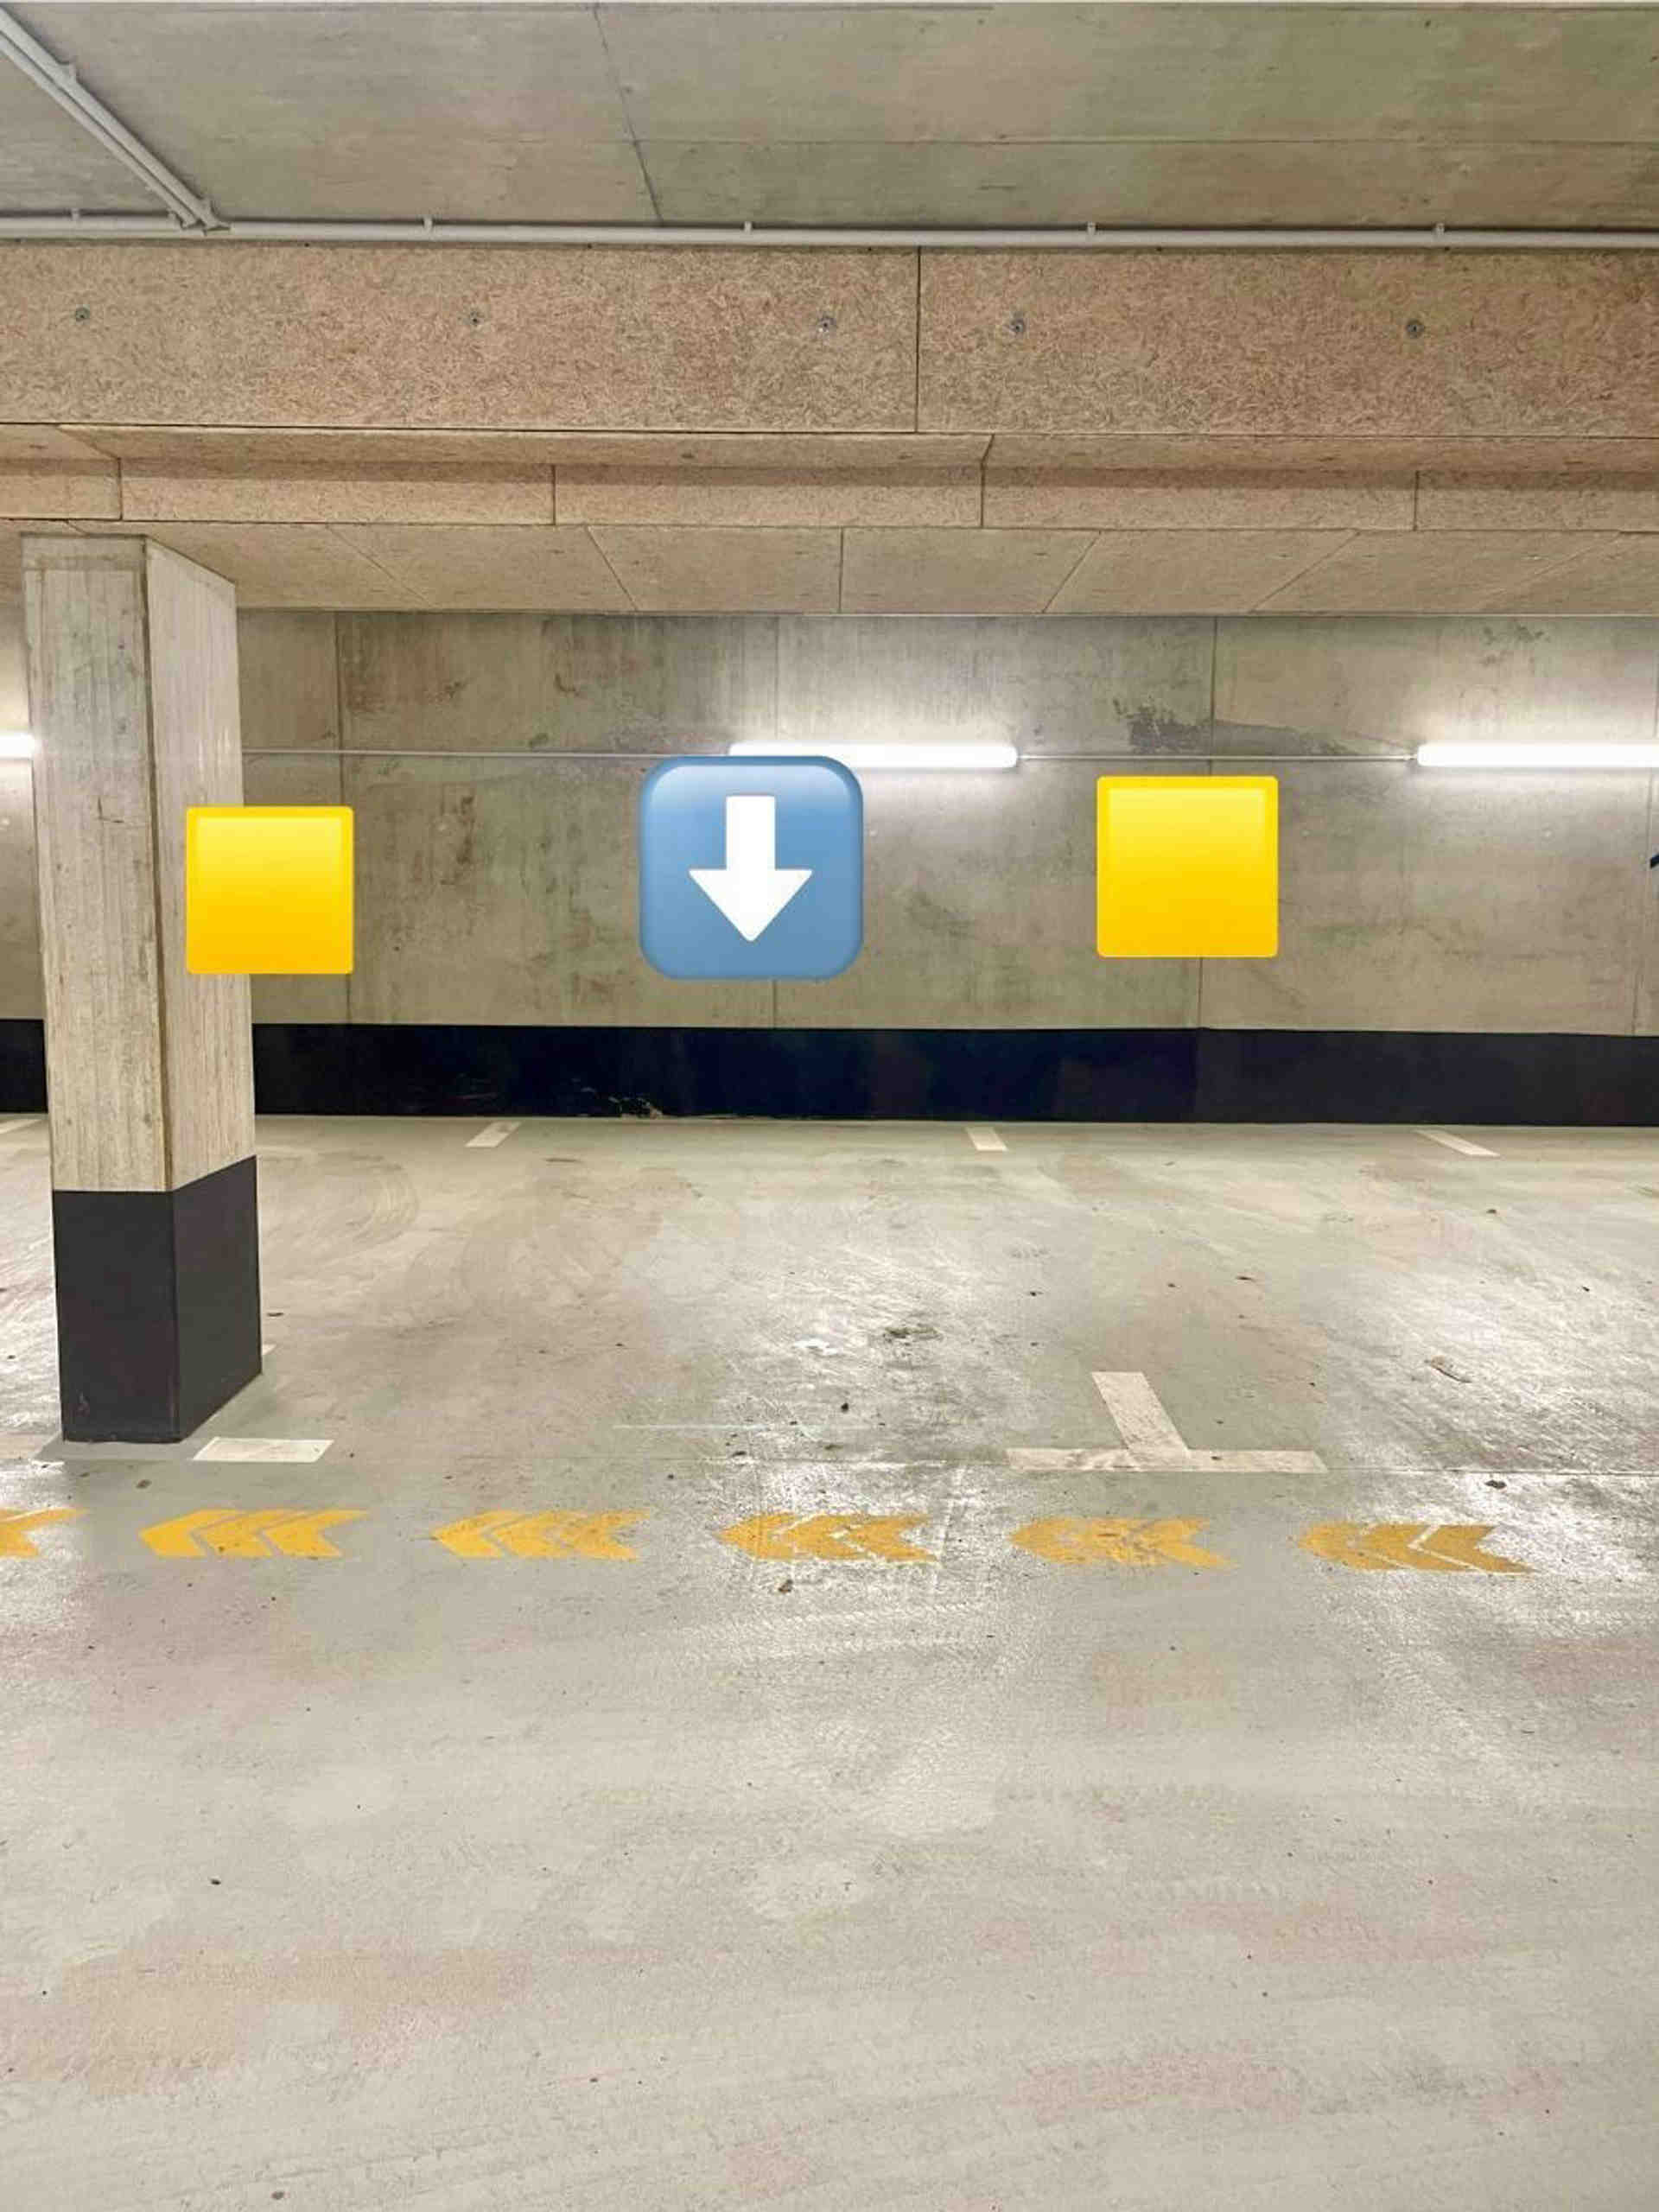 Podzemné parkovisko v Obersendlingu - Gmunder Straße, 81379 Munich - Fotka 1 z 1